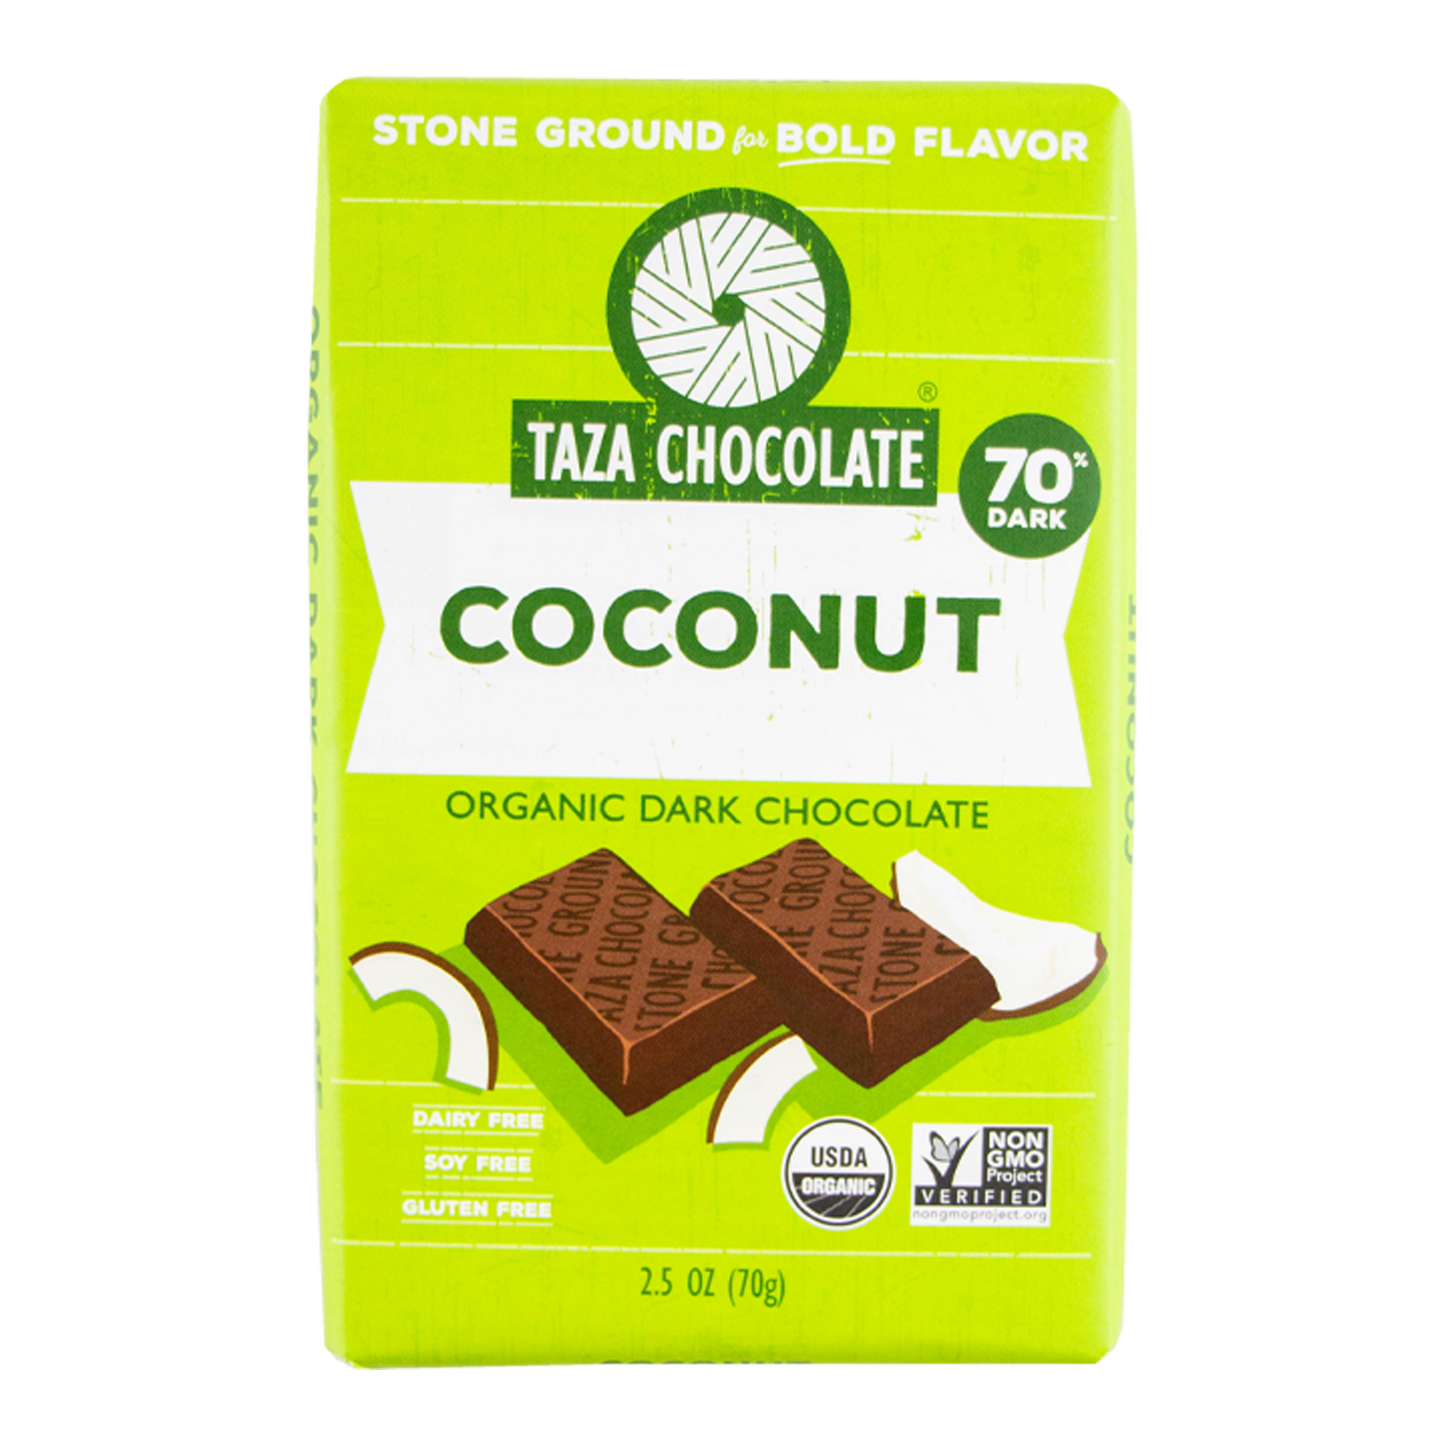 Taza Chocolate - Coconut Dark Chocolate - 70%